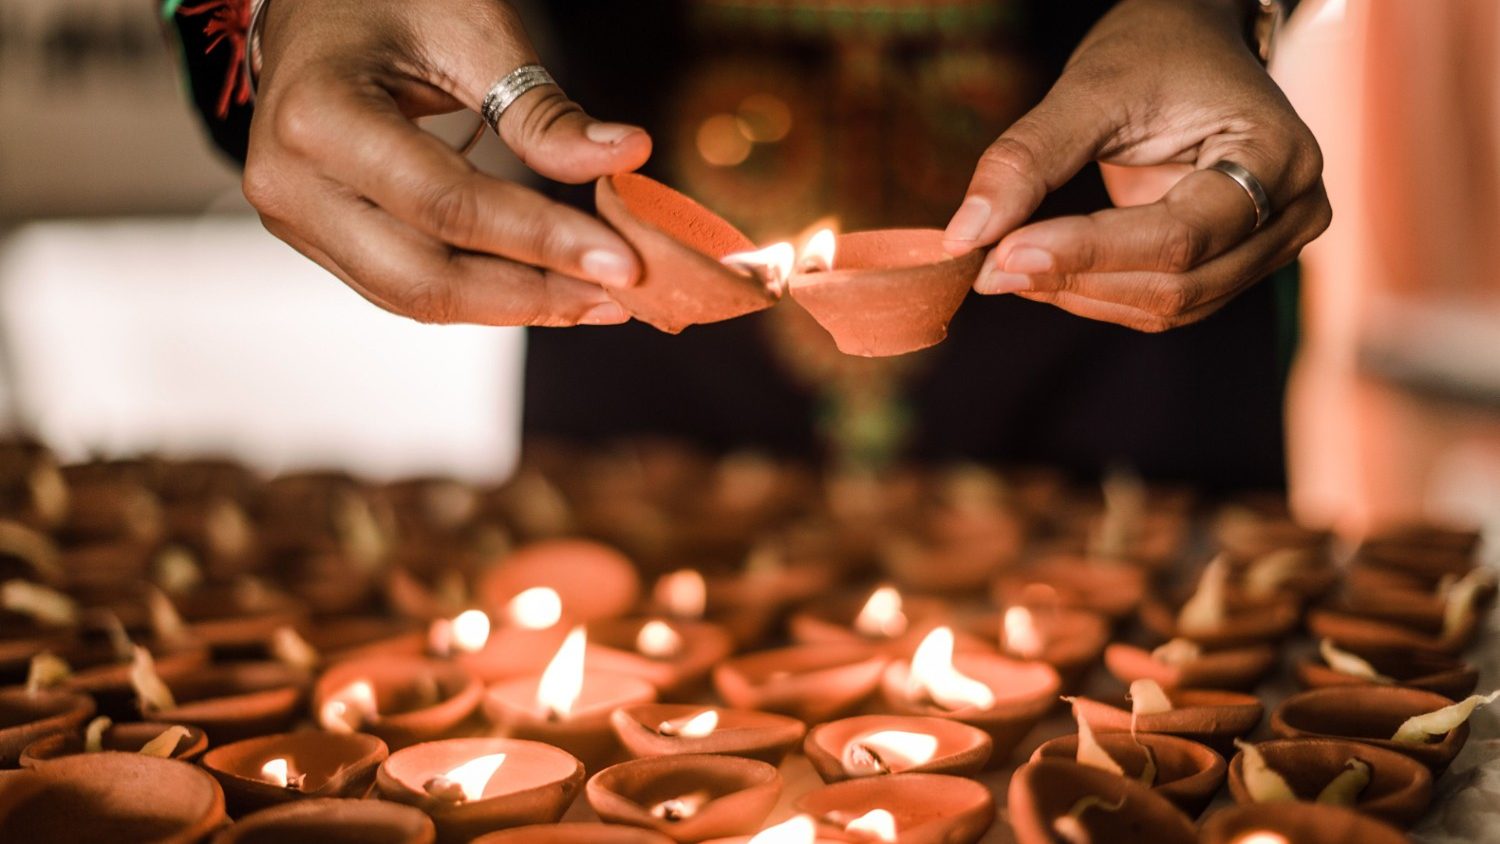 Святейший Престол: индуисты и христиане призваны строить культуру надежды